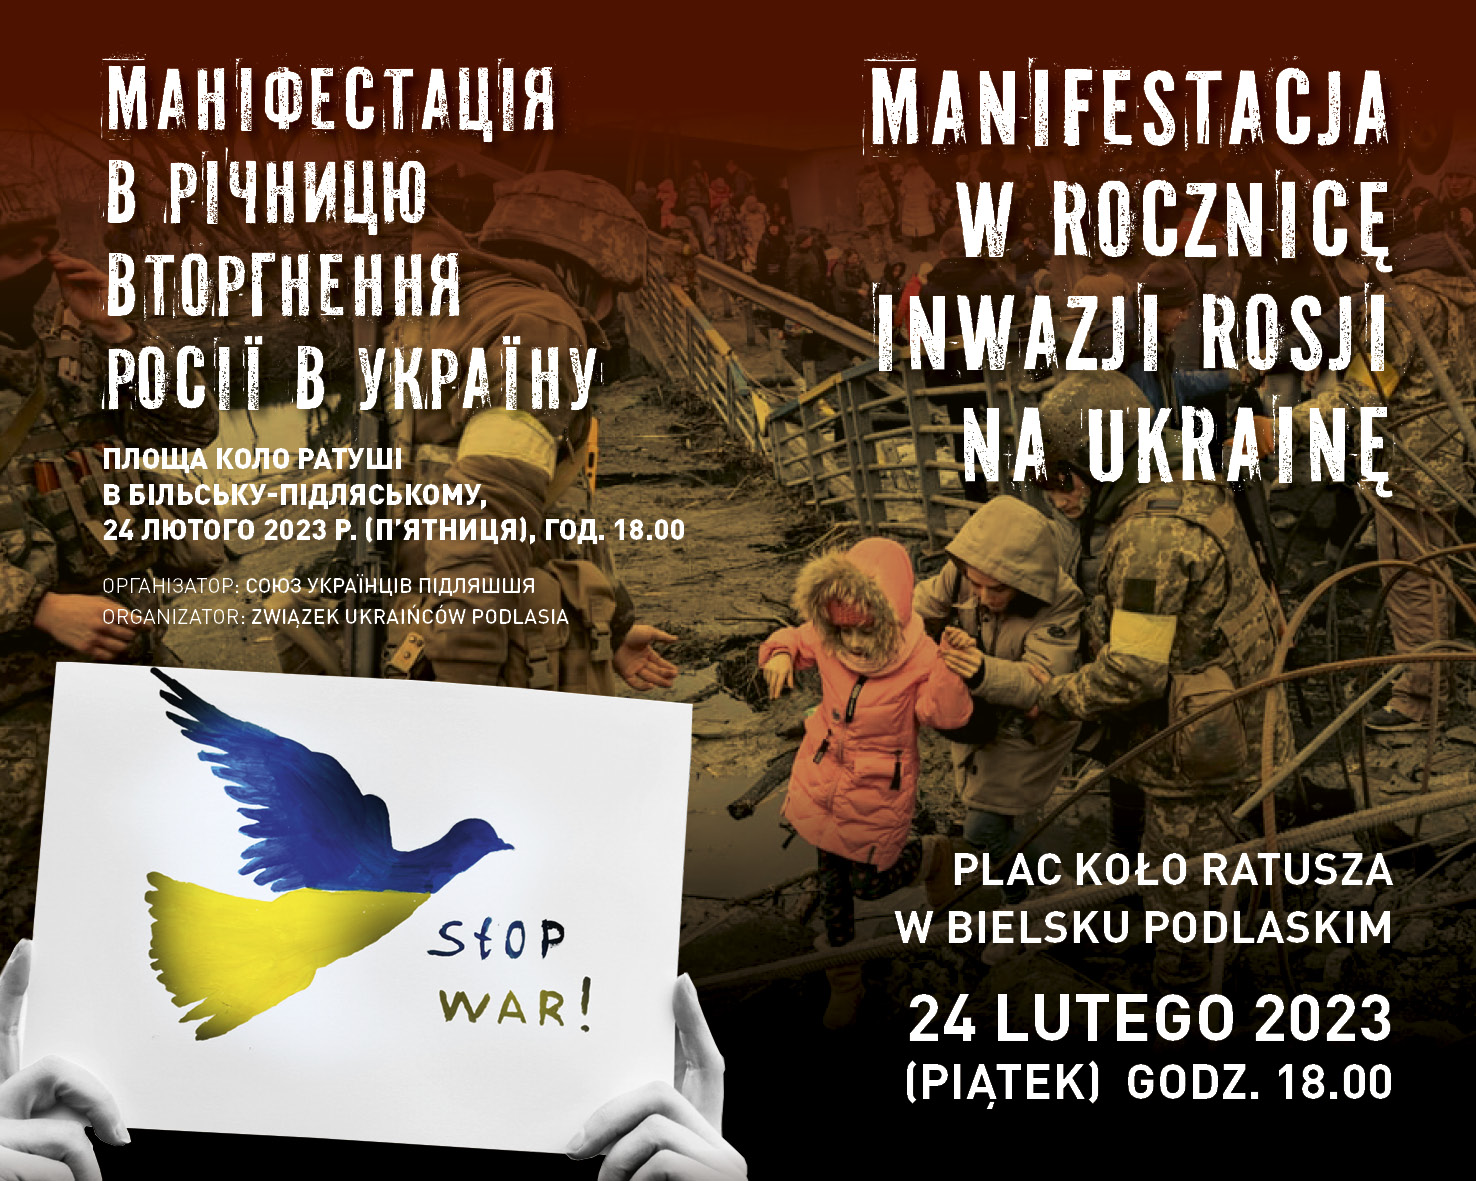 Manifestacja w Bielsku Podlaskim w rocznicę inwazji Rosji na Ukrainę